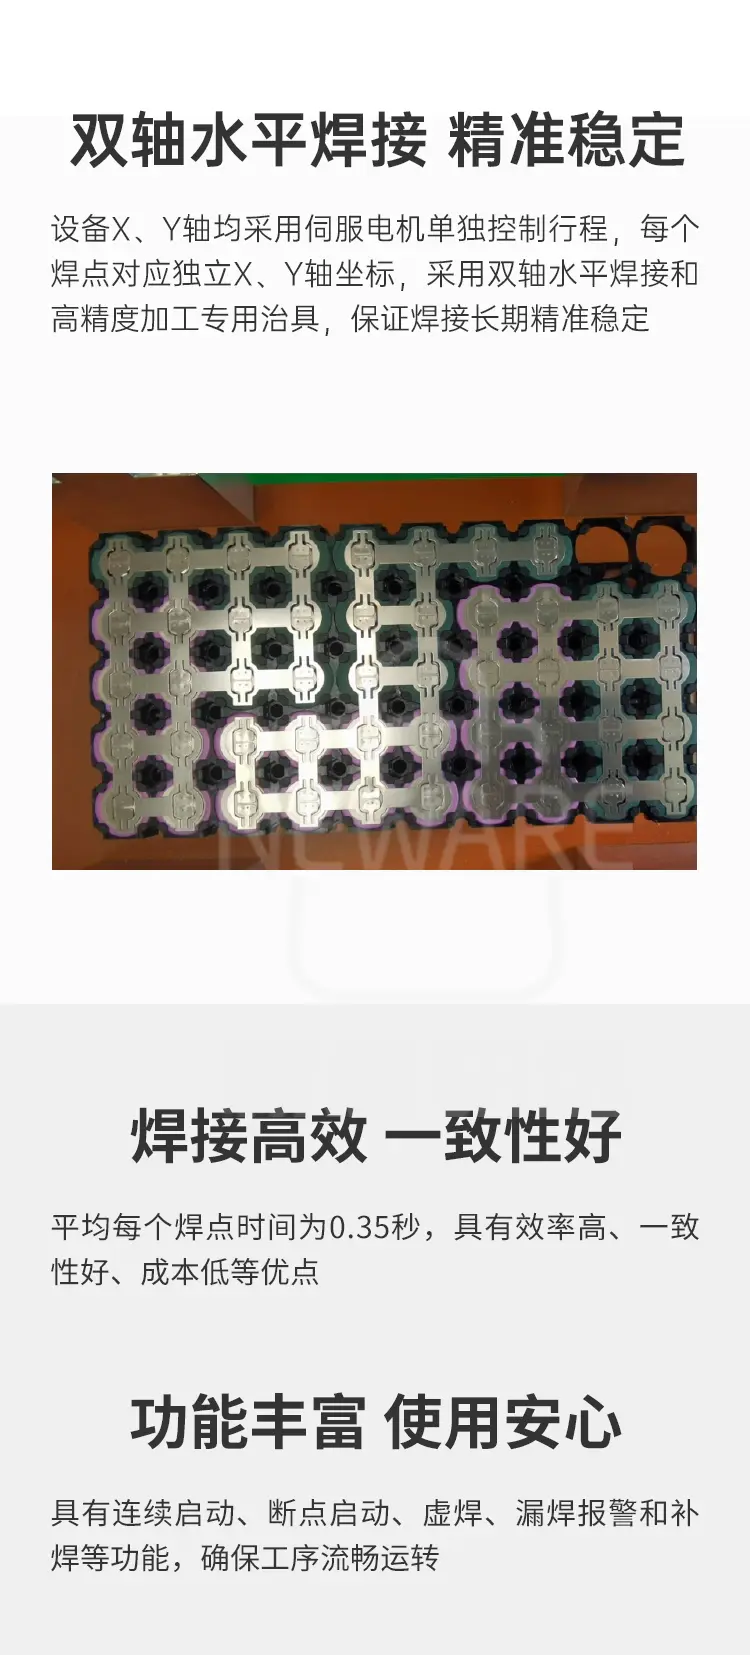 全自动单面对焊点焊机ASWM-5437商品介绍3